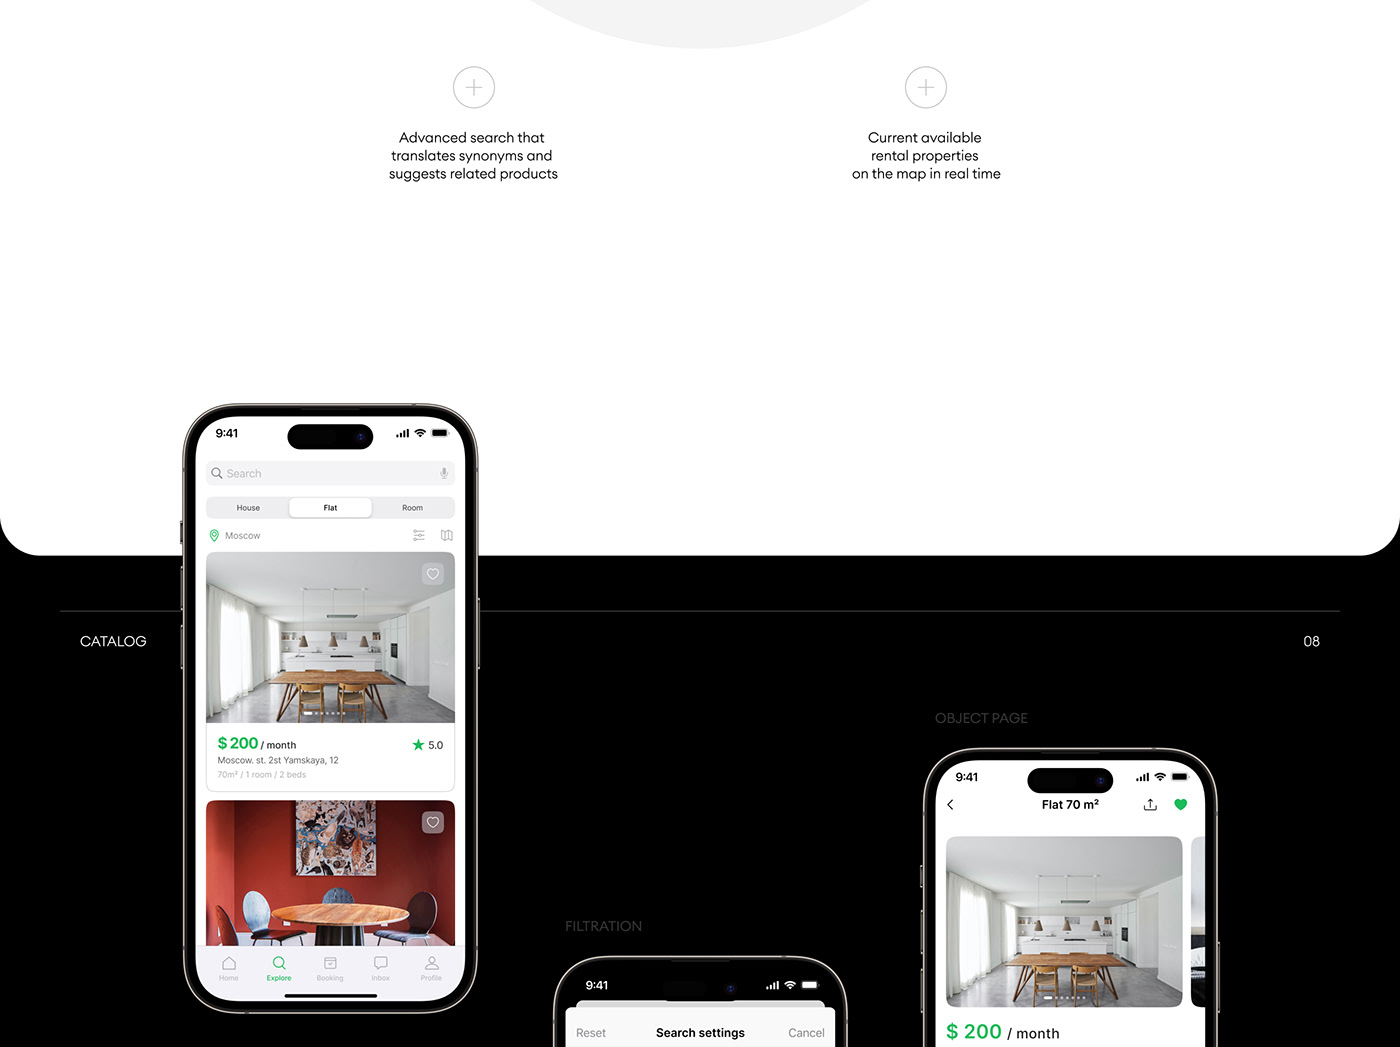 co-living housing Mobile app Rent